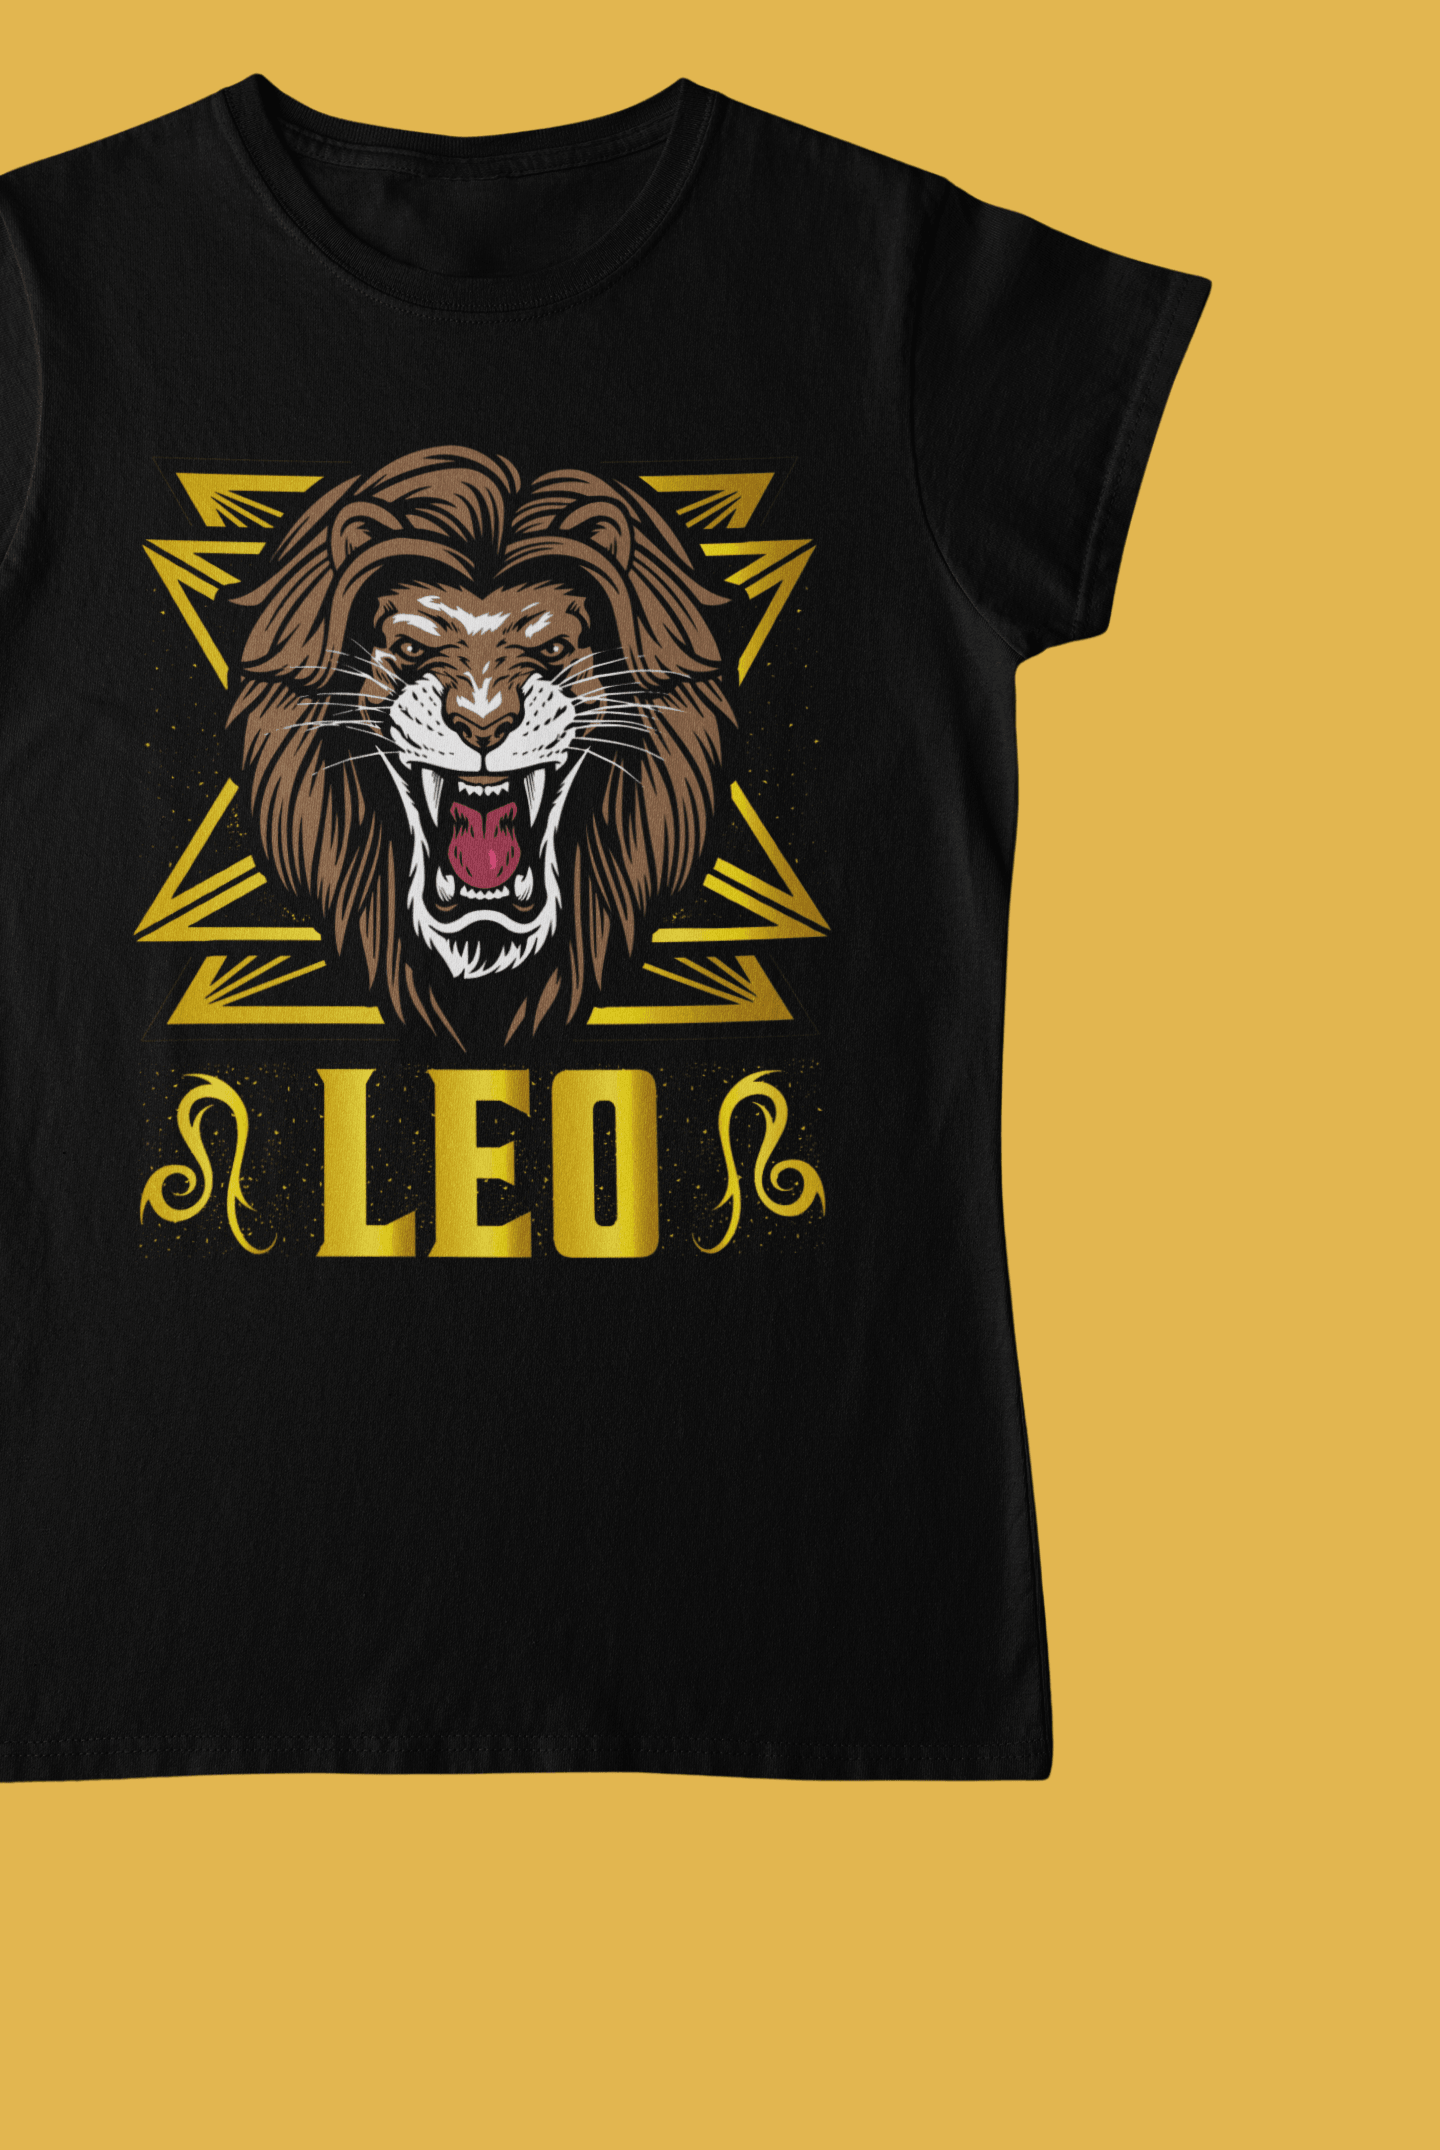 Leo Black T-Shirt For Women - ATOM